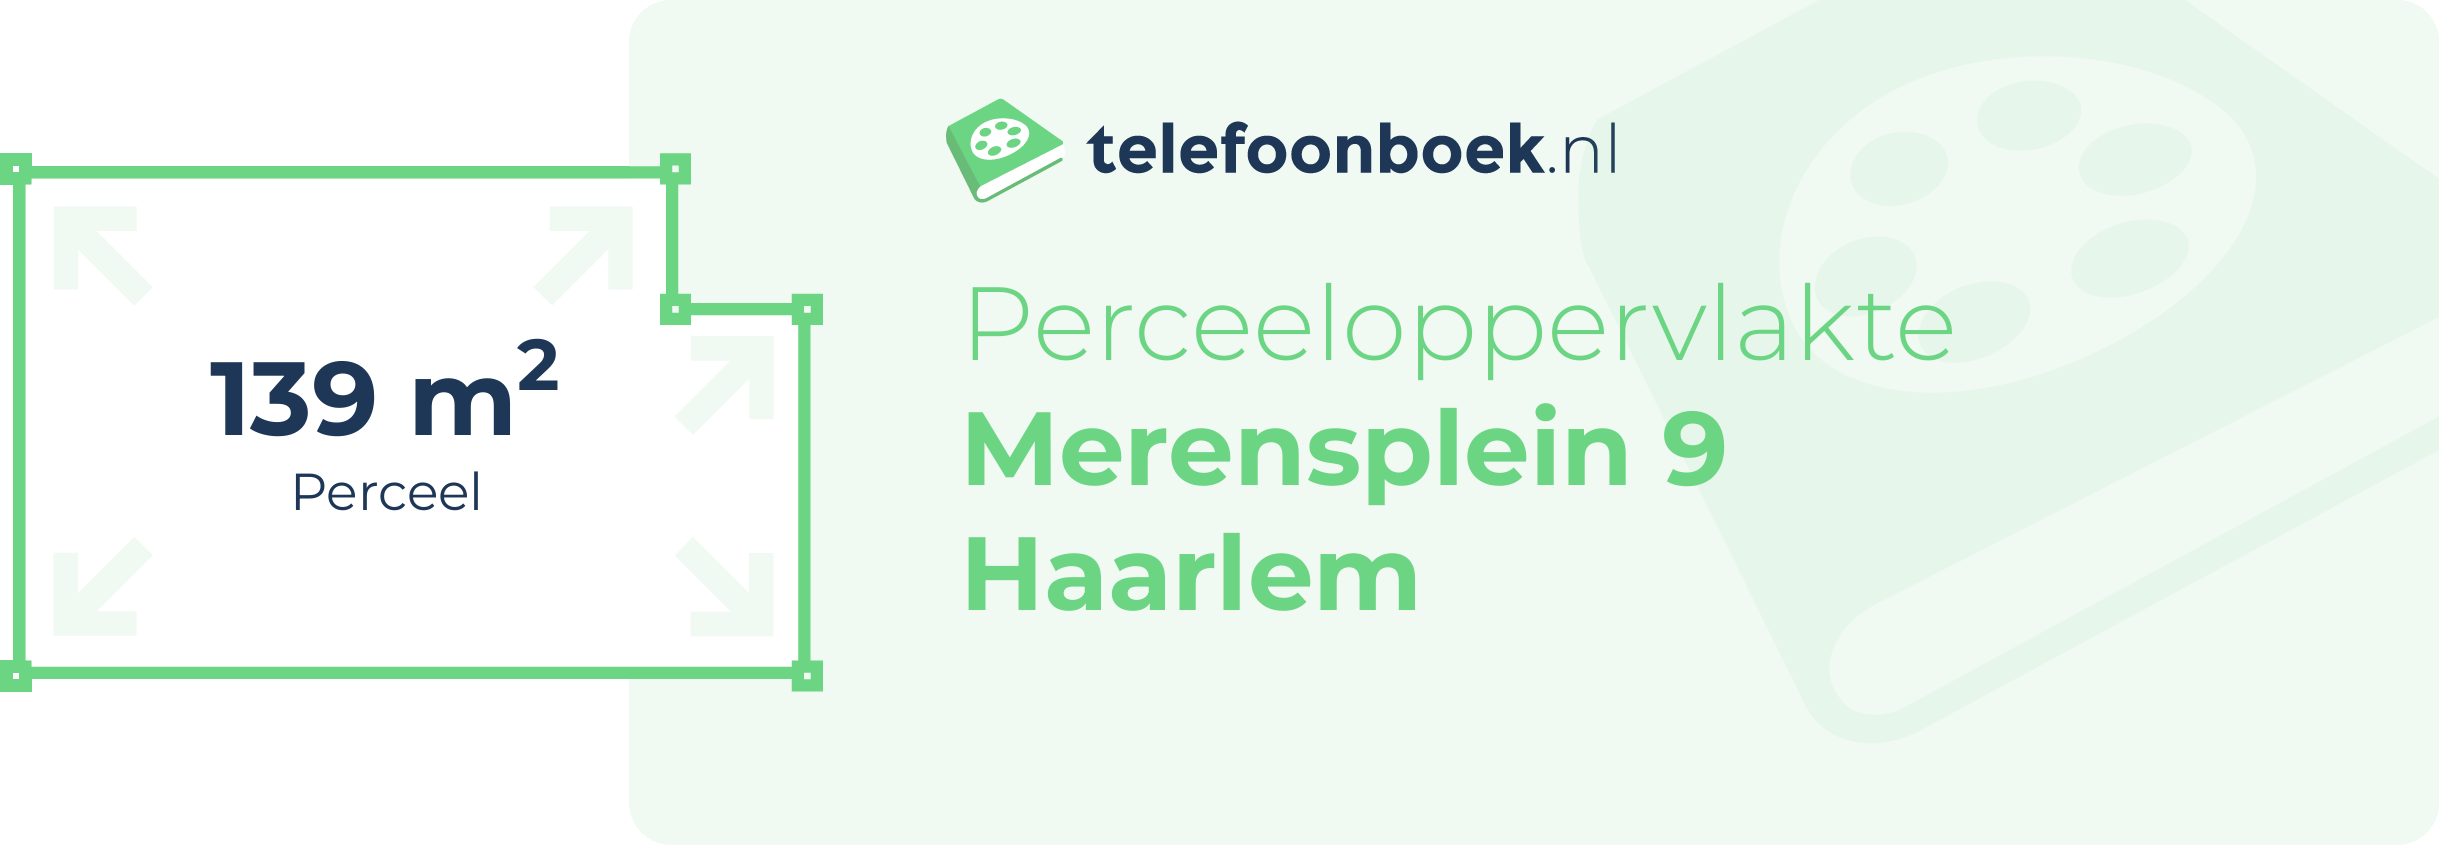 Perceeloppervlakte Merensplein 9 Haarlem